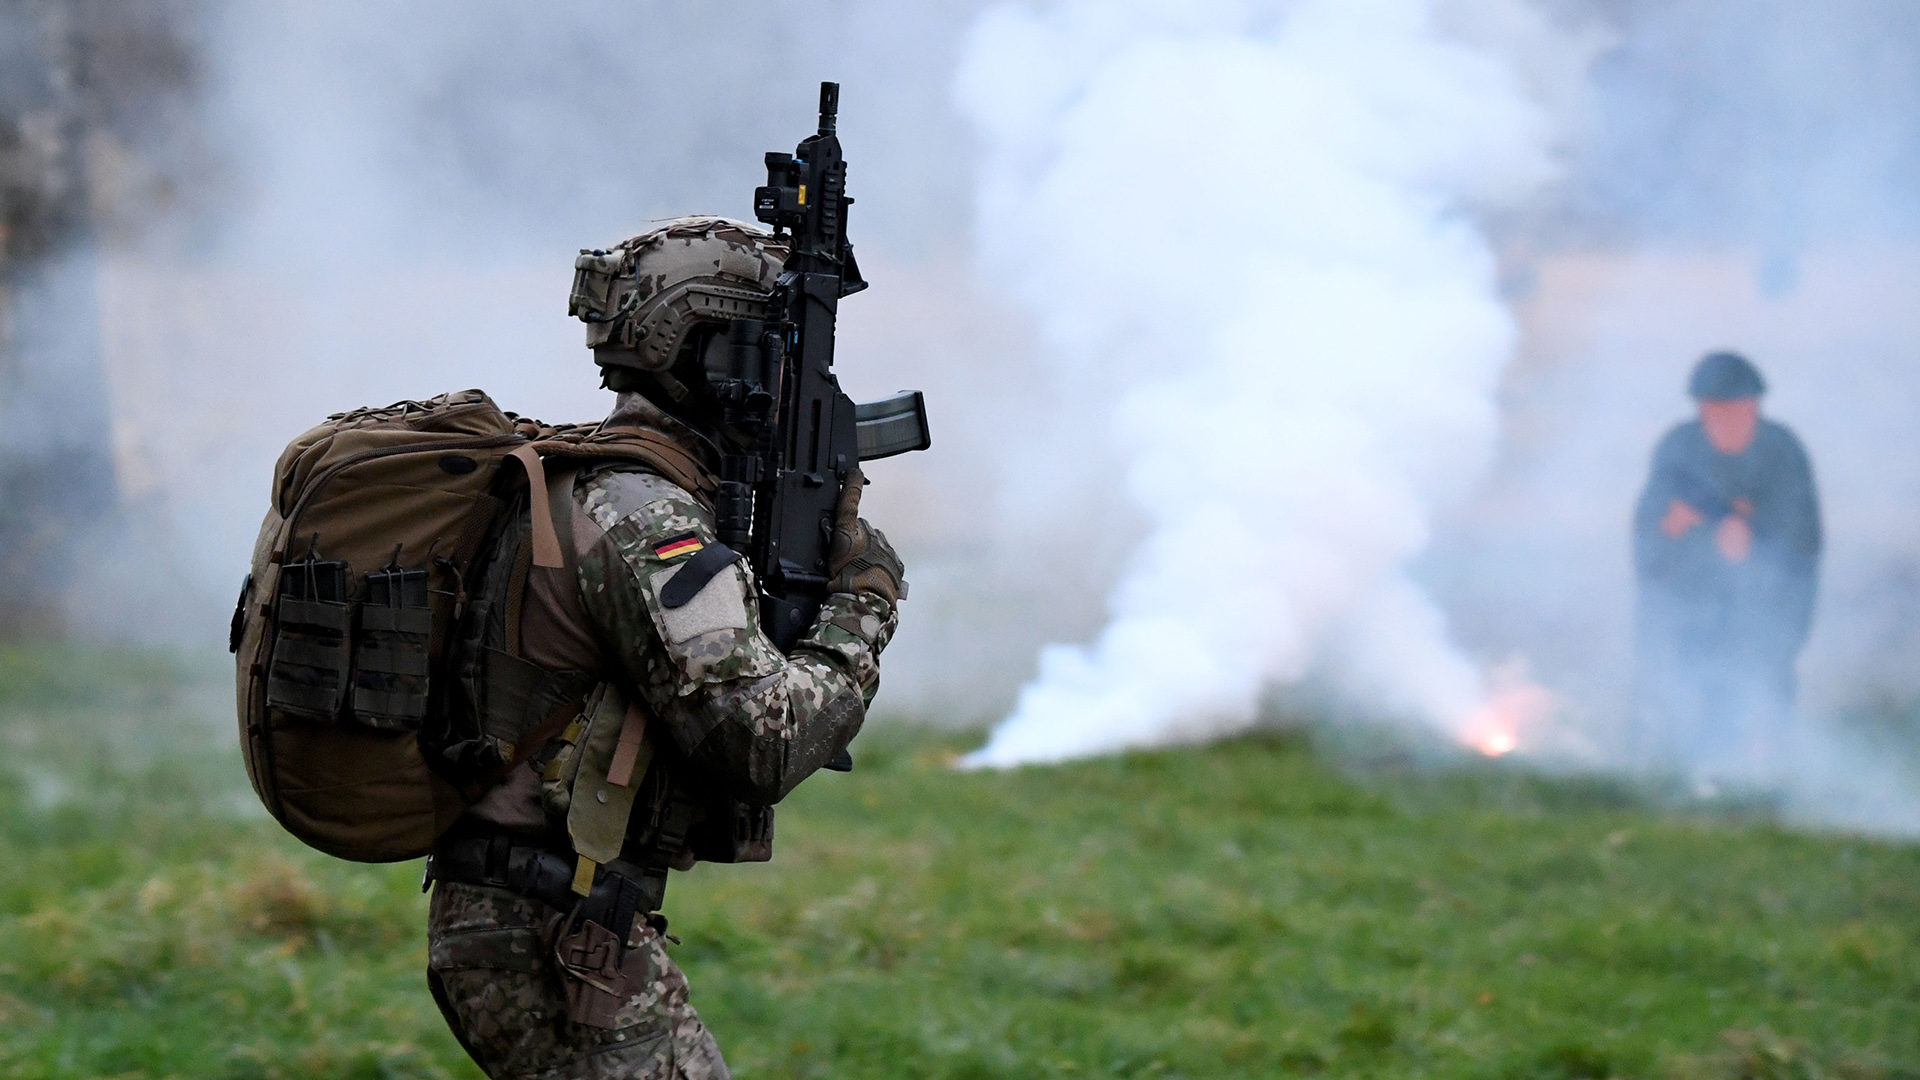 Soldat der KSK im Training mit einem Gewehr - im Hintergrund Rauch